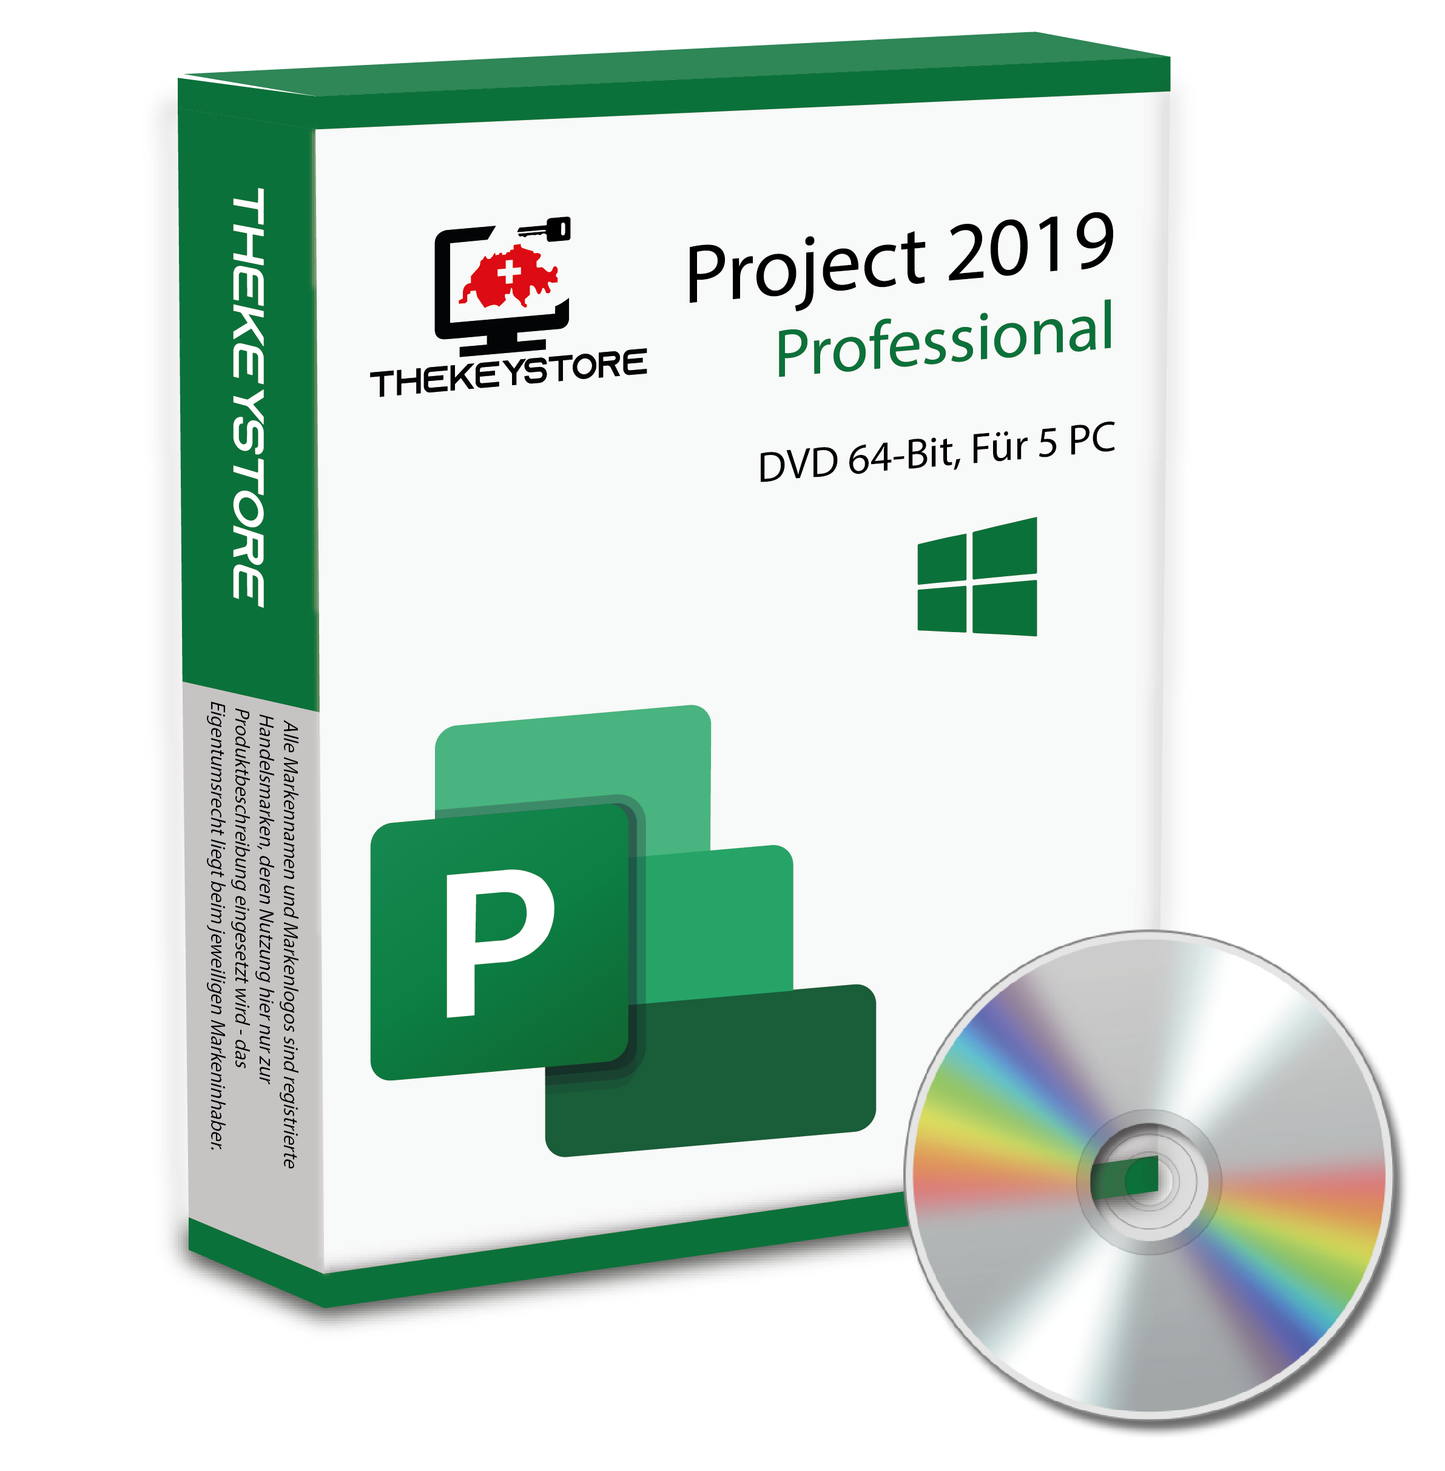 Microsoft Project 2019 Professional - Für 5 PC - TheKeyStore Schweiz